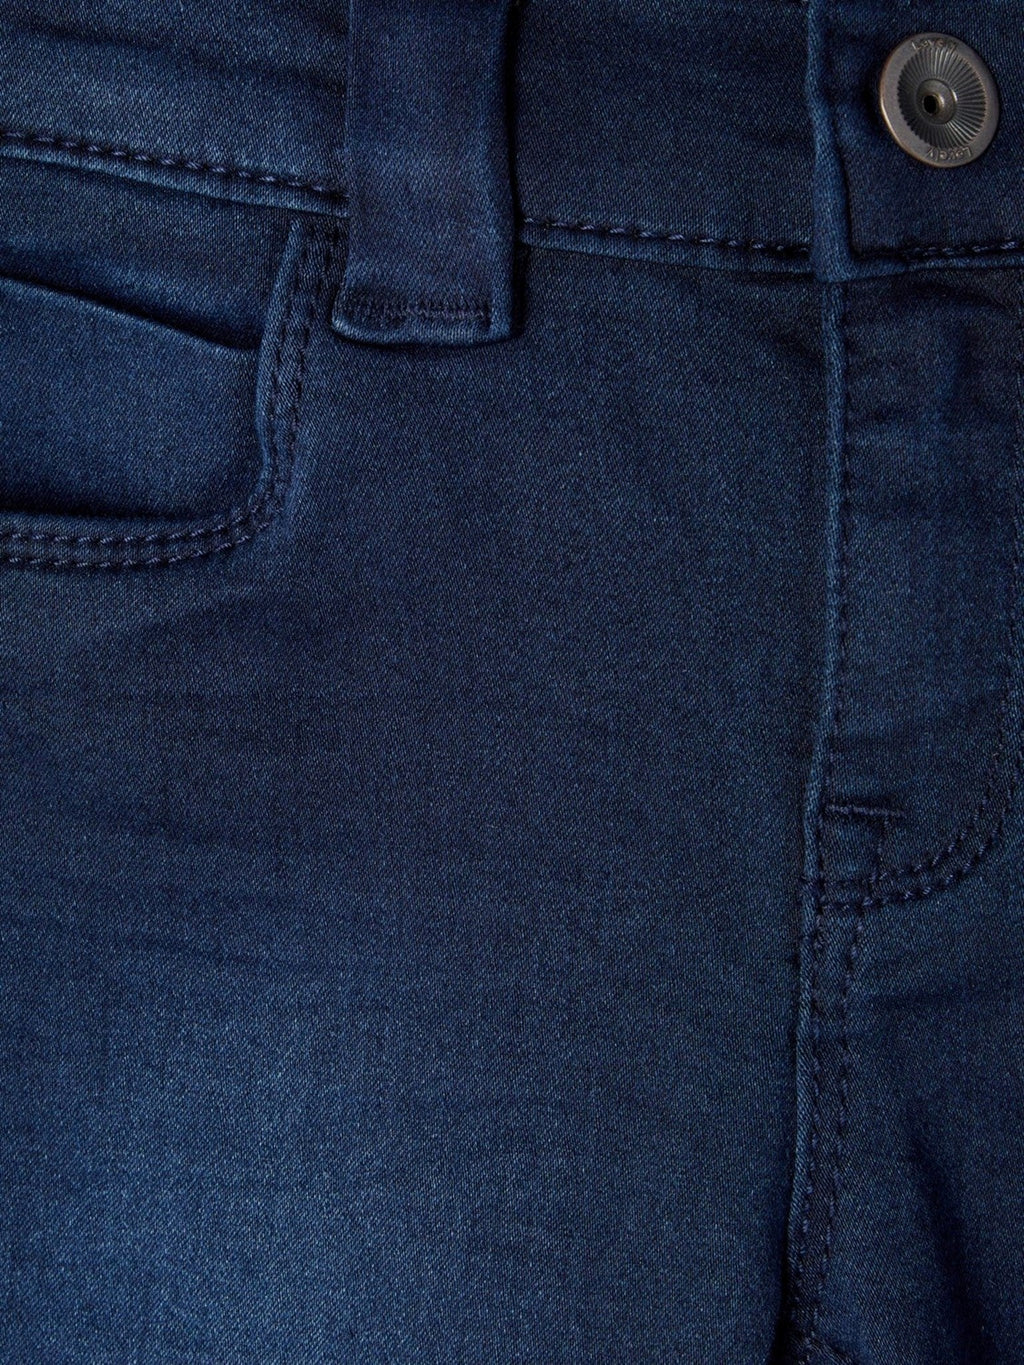 Polly džinsai - tamsiai mėlynas džinsinis audinys